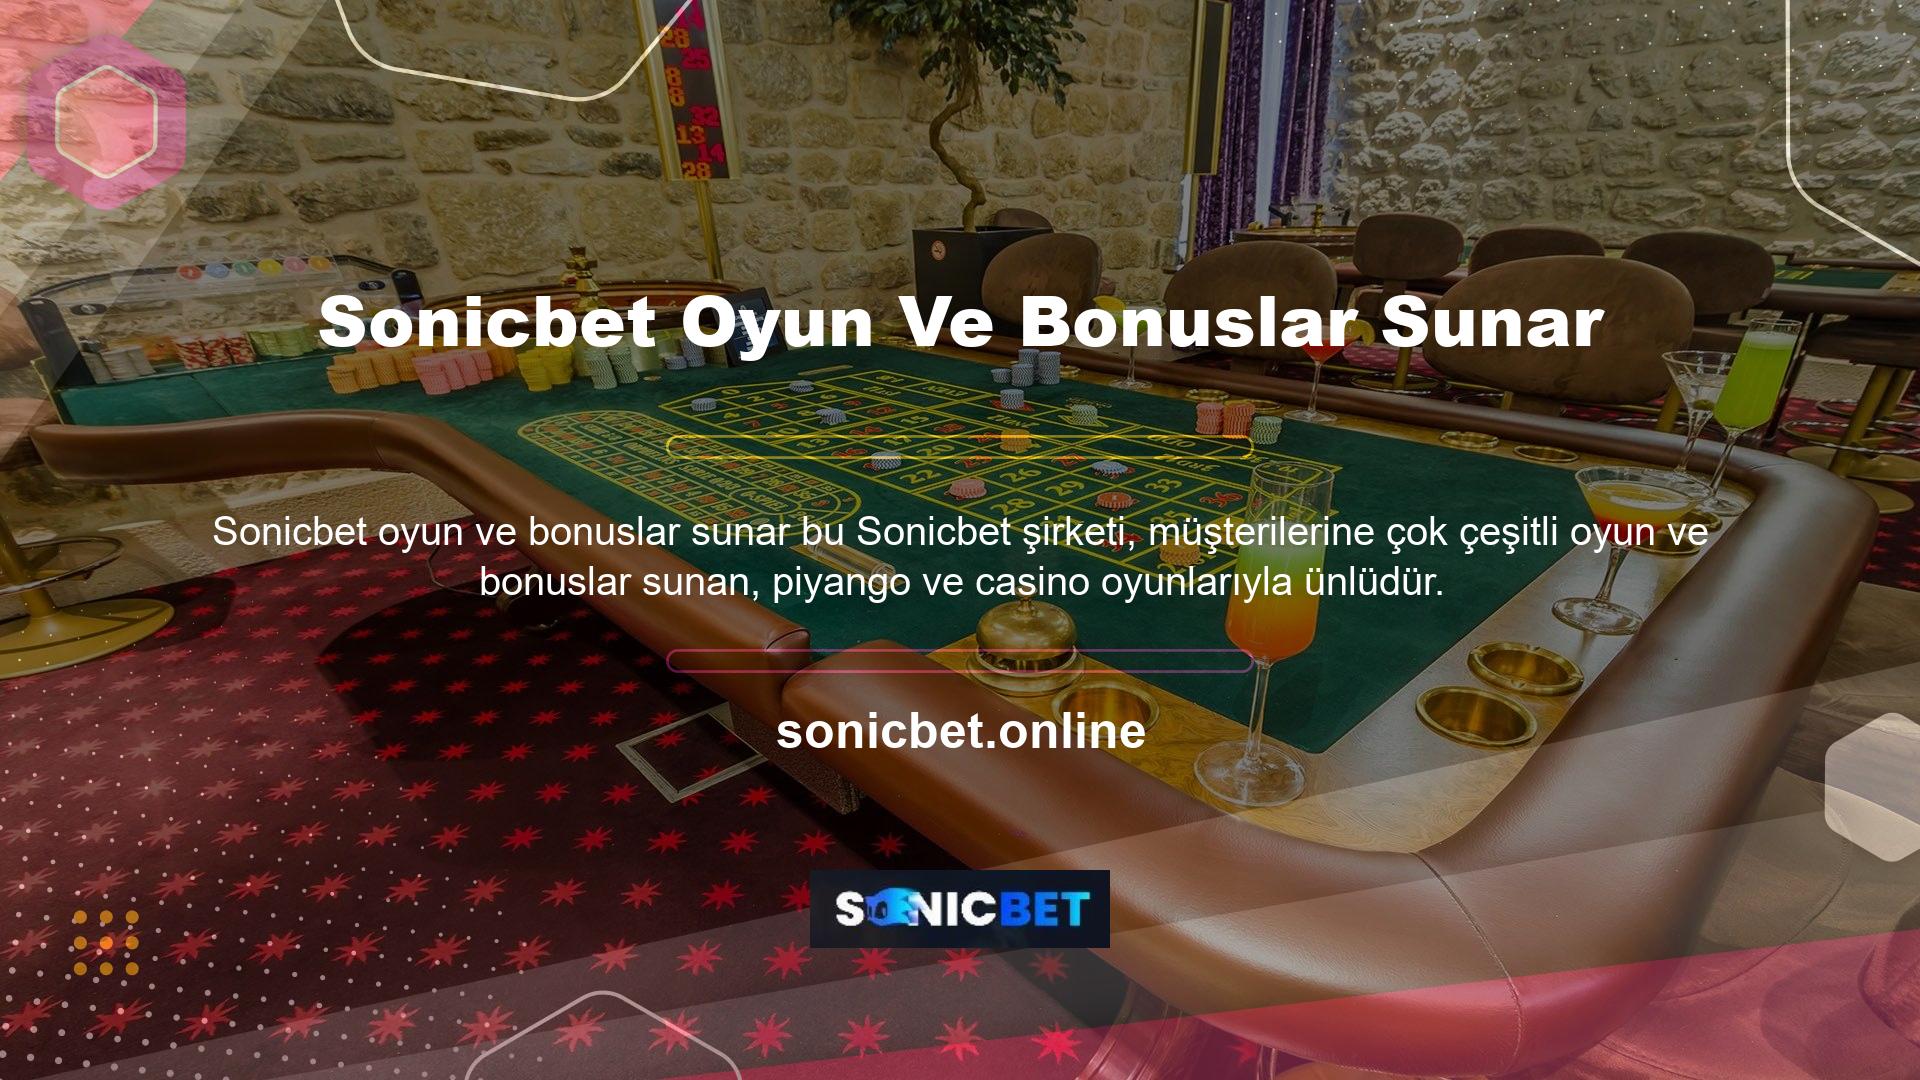 Pek çok insan arasındaki popülaritesinin yanı sıra Sonicbet Türk pokeri hakkında daha fazla bilgi edinmek için de yoğun bir talep var